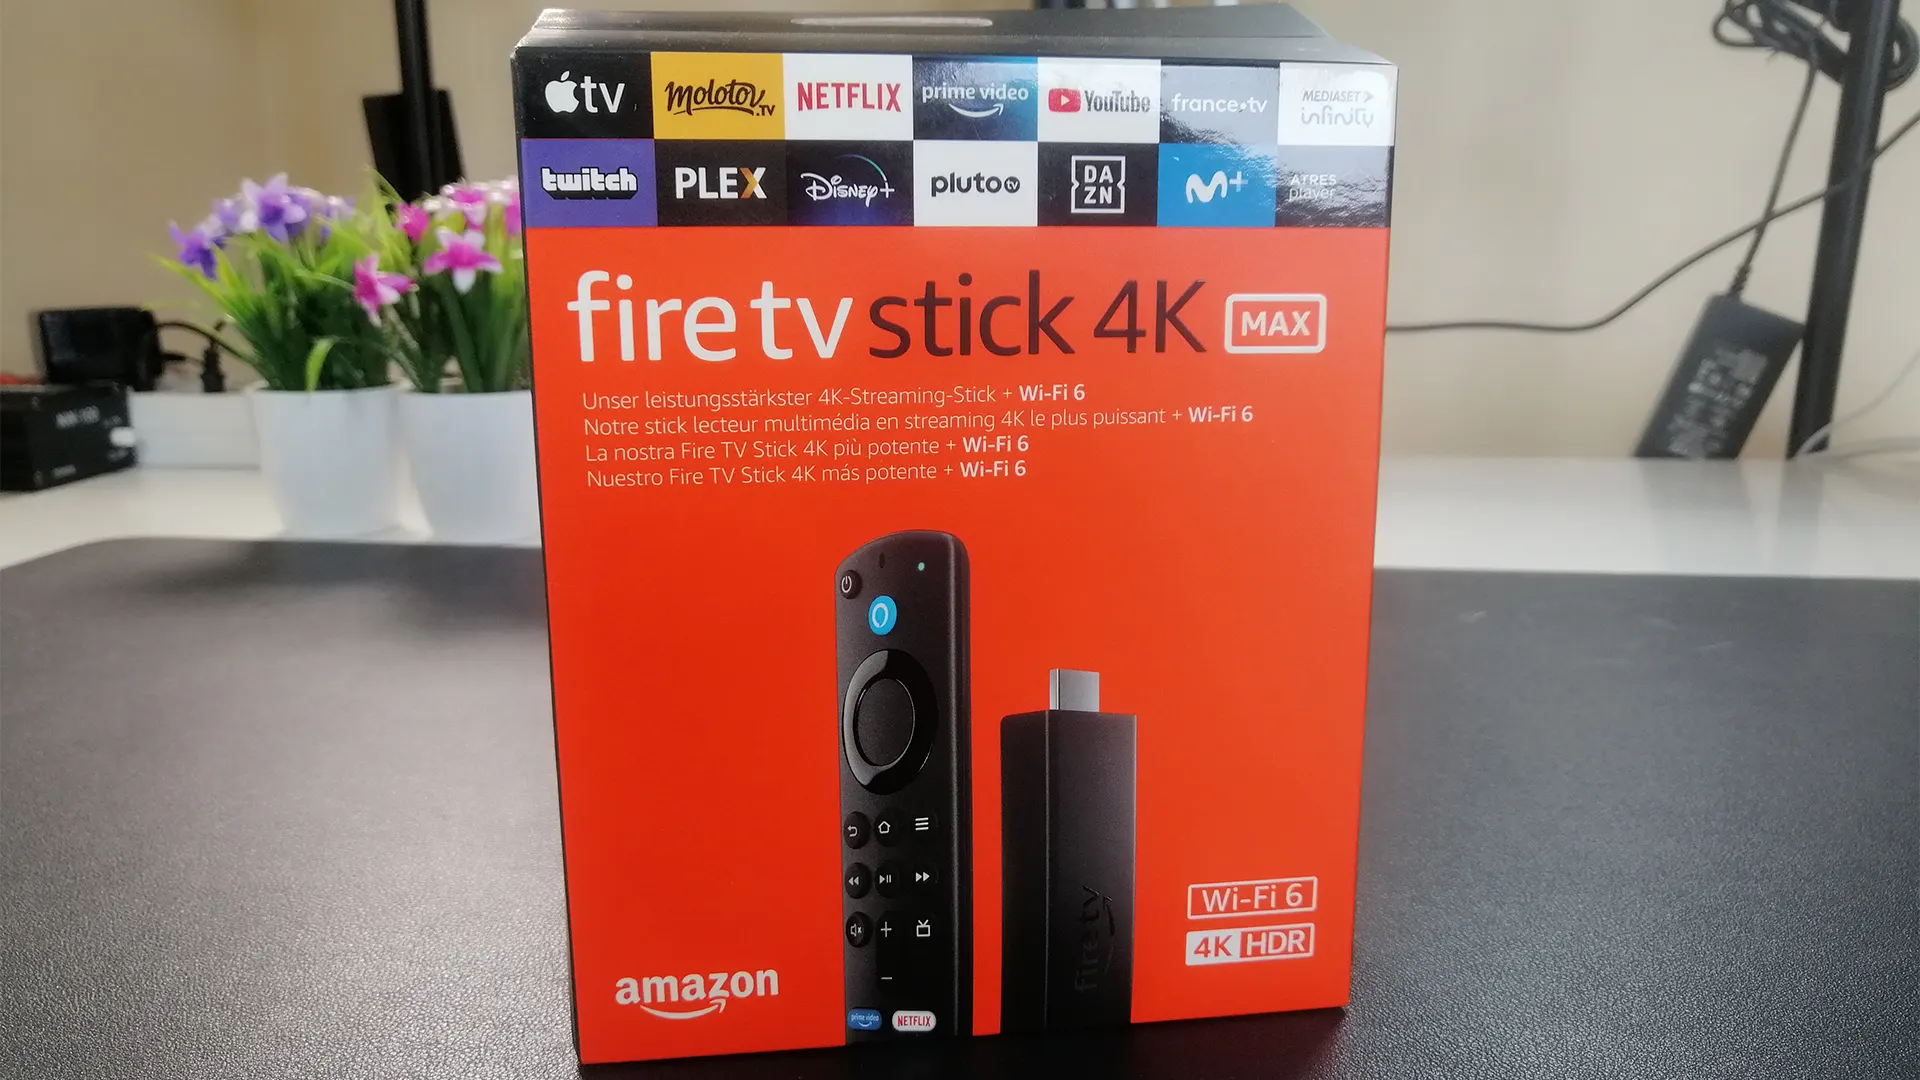 El Fire TV Stick 4K Max a precio de oferta en Amazon durante marzo